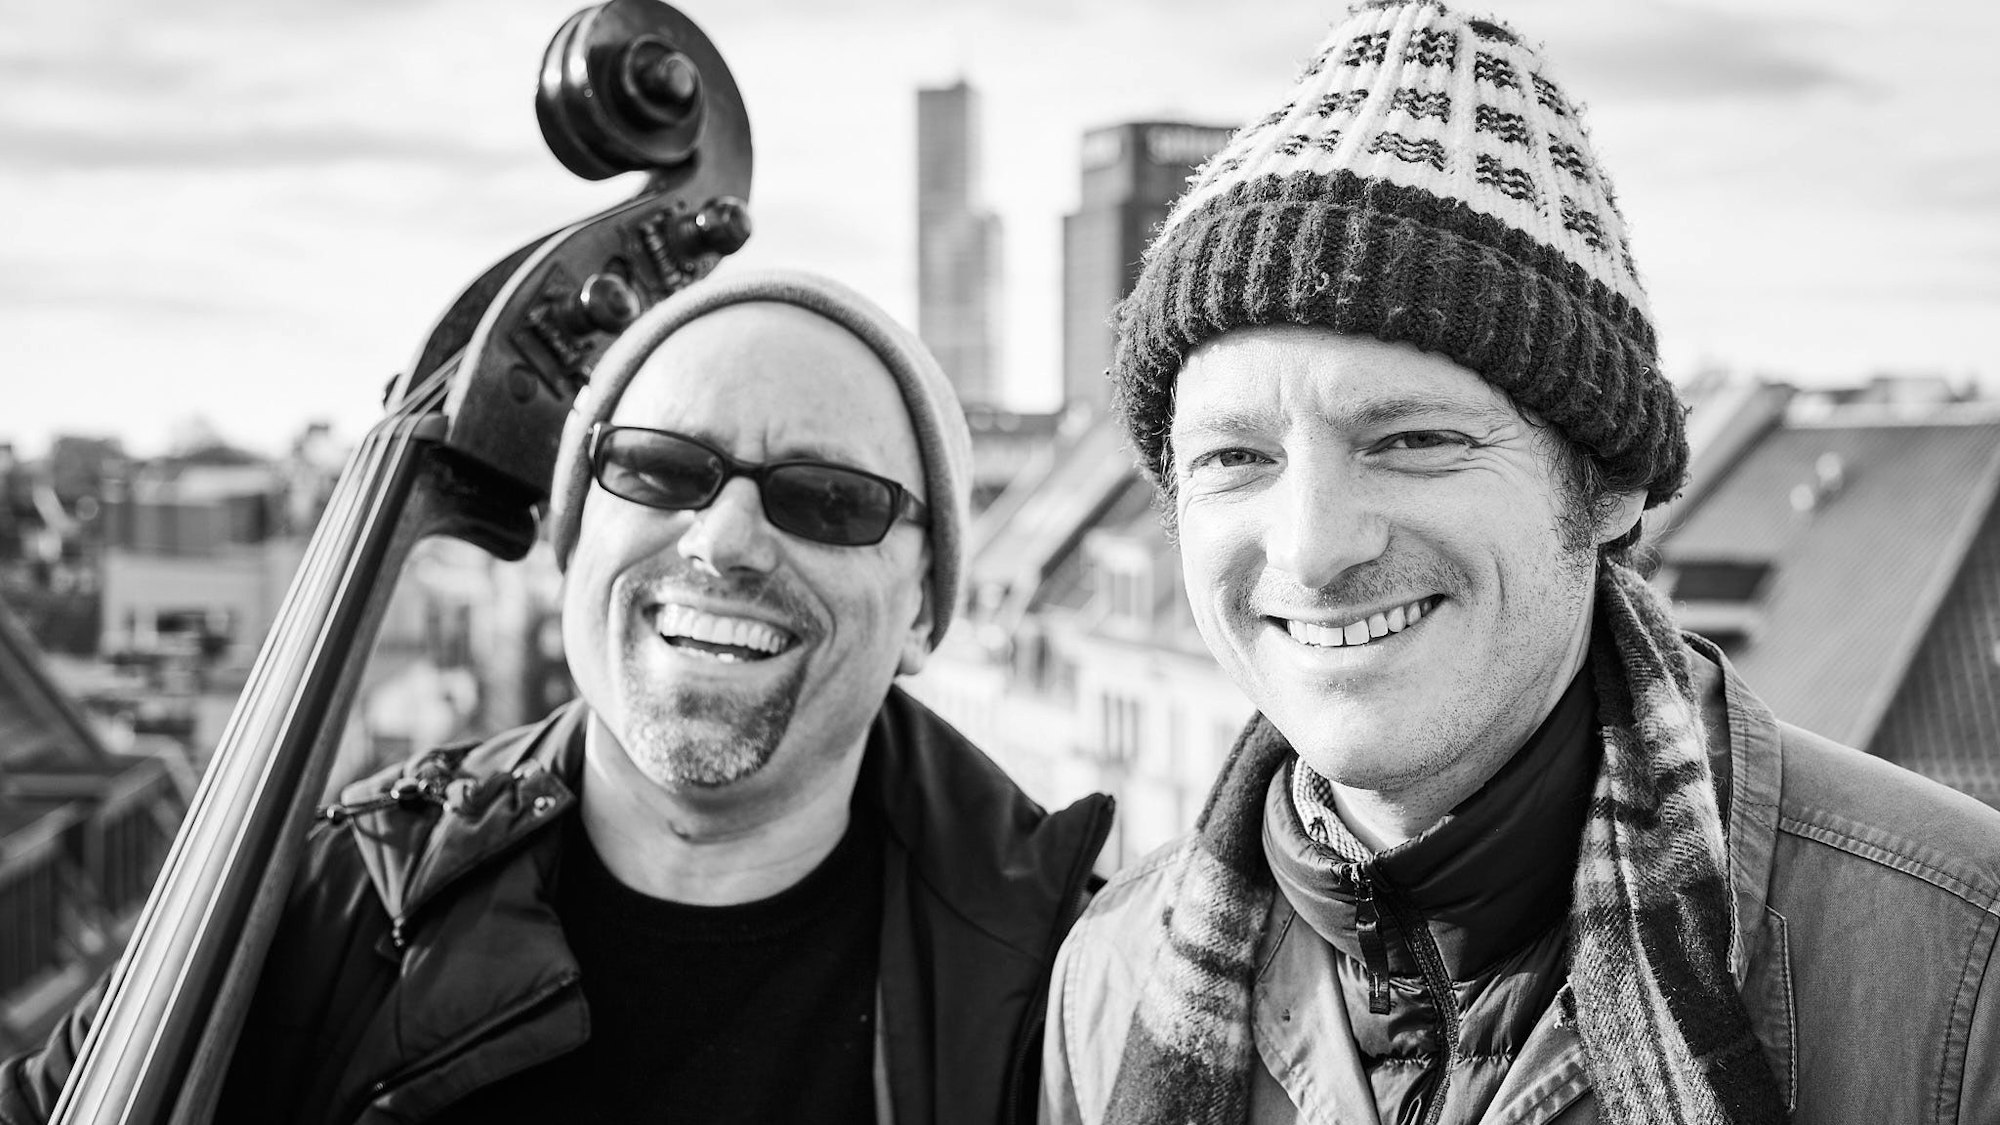 Die beiden Musiker Perfektomat alias Joscha Oetz und Retrogott alias Kurt Tallert vor der Kölner Skyline. Im Hintergrund erkennt man das Saturn-Hochhaus und den Mediapark. Oetz hält seinen Kontrabass.